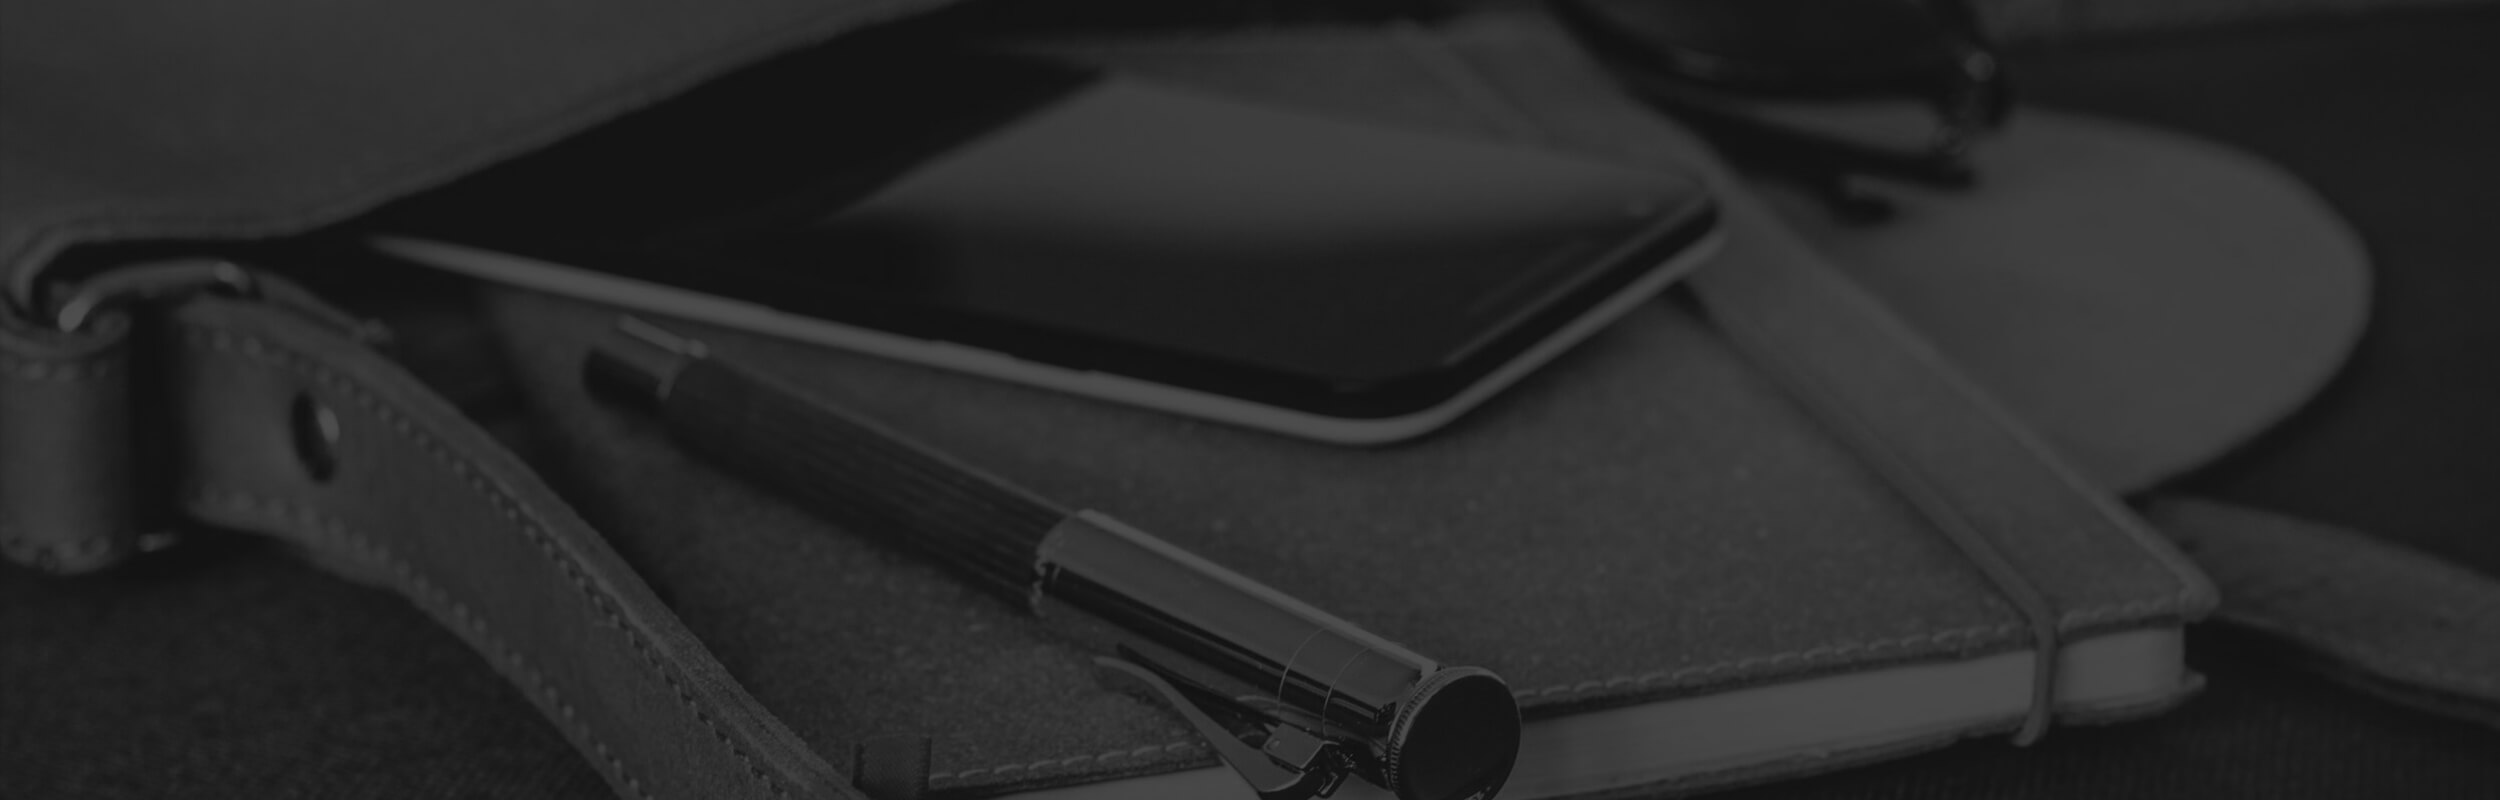 pero, zápisník a mobil v čierno-bielej